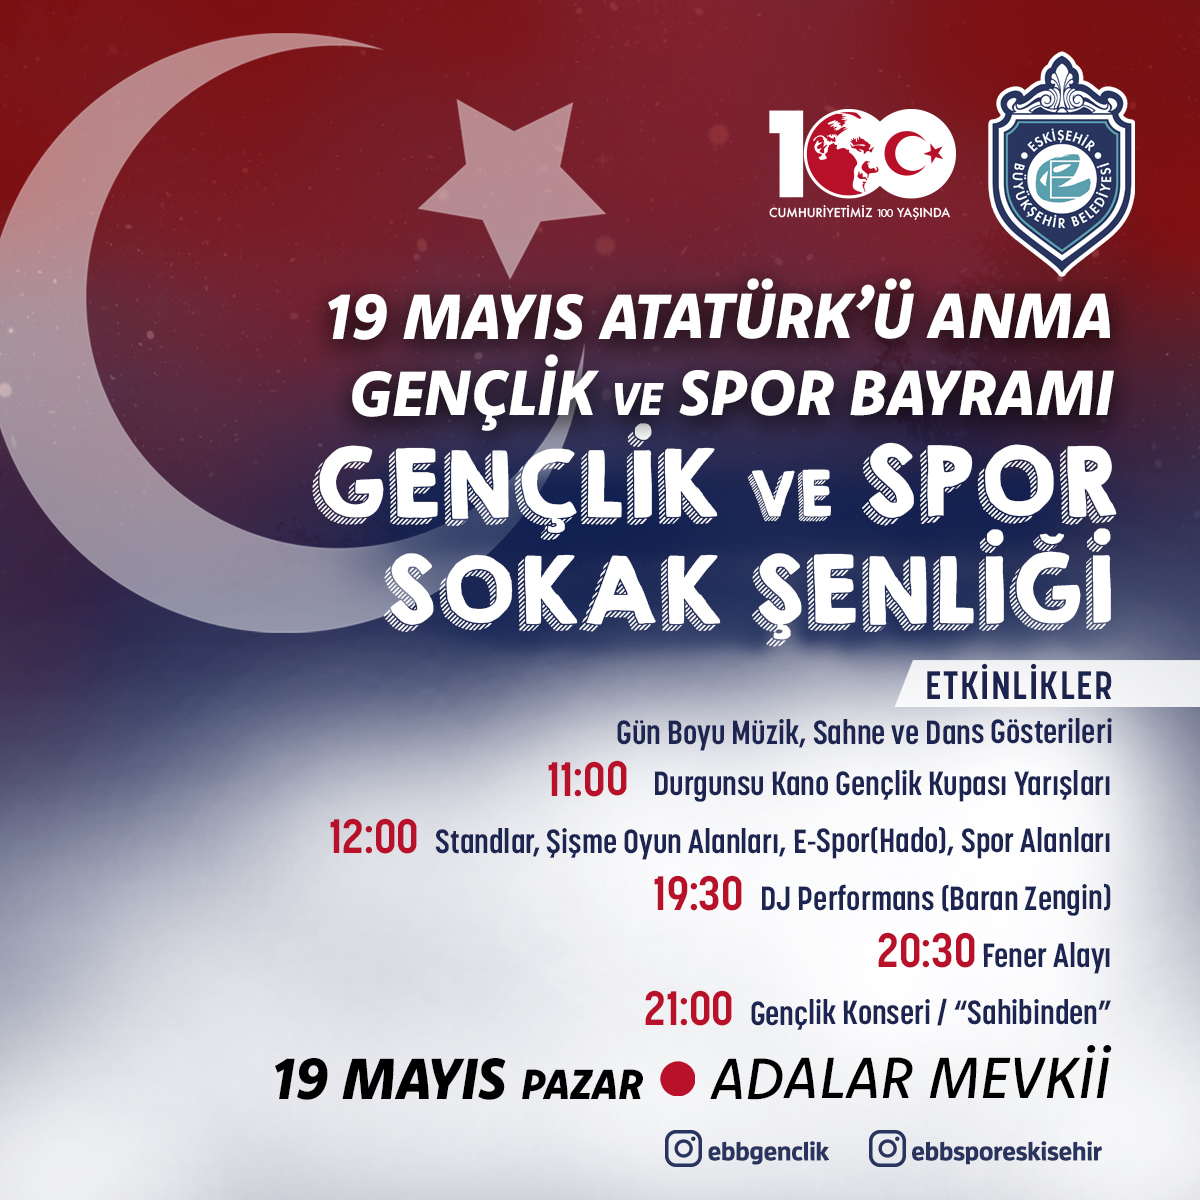 Sevgili gençler, 19 Mayıs Atatürk'ü Anma Gençlik ve Spor Bayramımızı muhteşem bir sokak şenliği ile kutlamaya hazır mıyız? 😍 Gün boyu müzik, sahne, spor ve dans gösterileri ile gerçekleşecek şenliğimiz, akşam Fener Alayı ve Gençlik Konseri ile renklenecek. 19 Mayıs'ta kimseye…